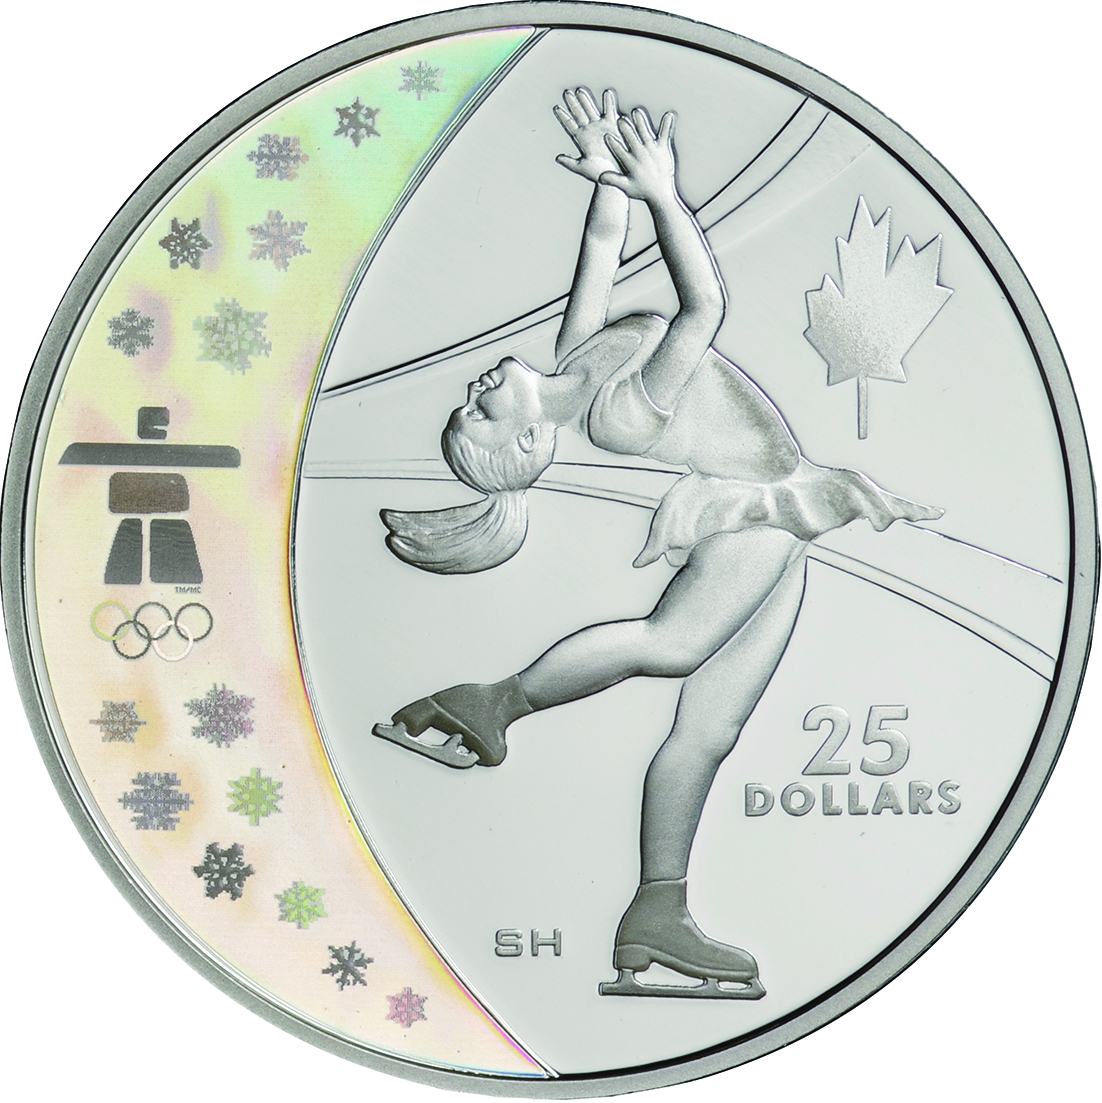 バンクーバー 2010 オリンピック冬季競技大会記念コイン『 ホログラム ...